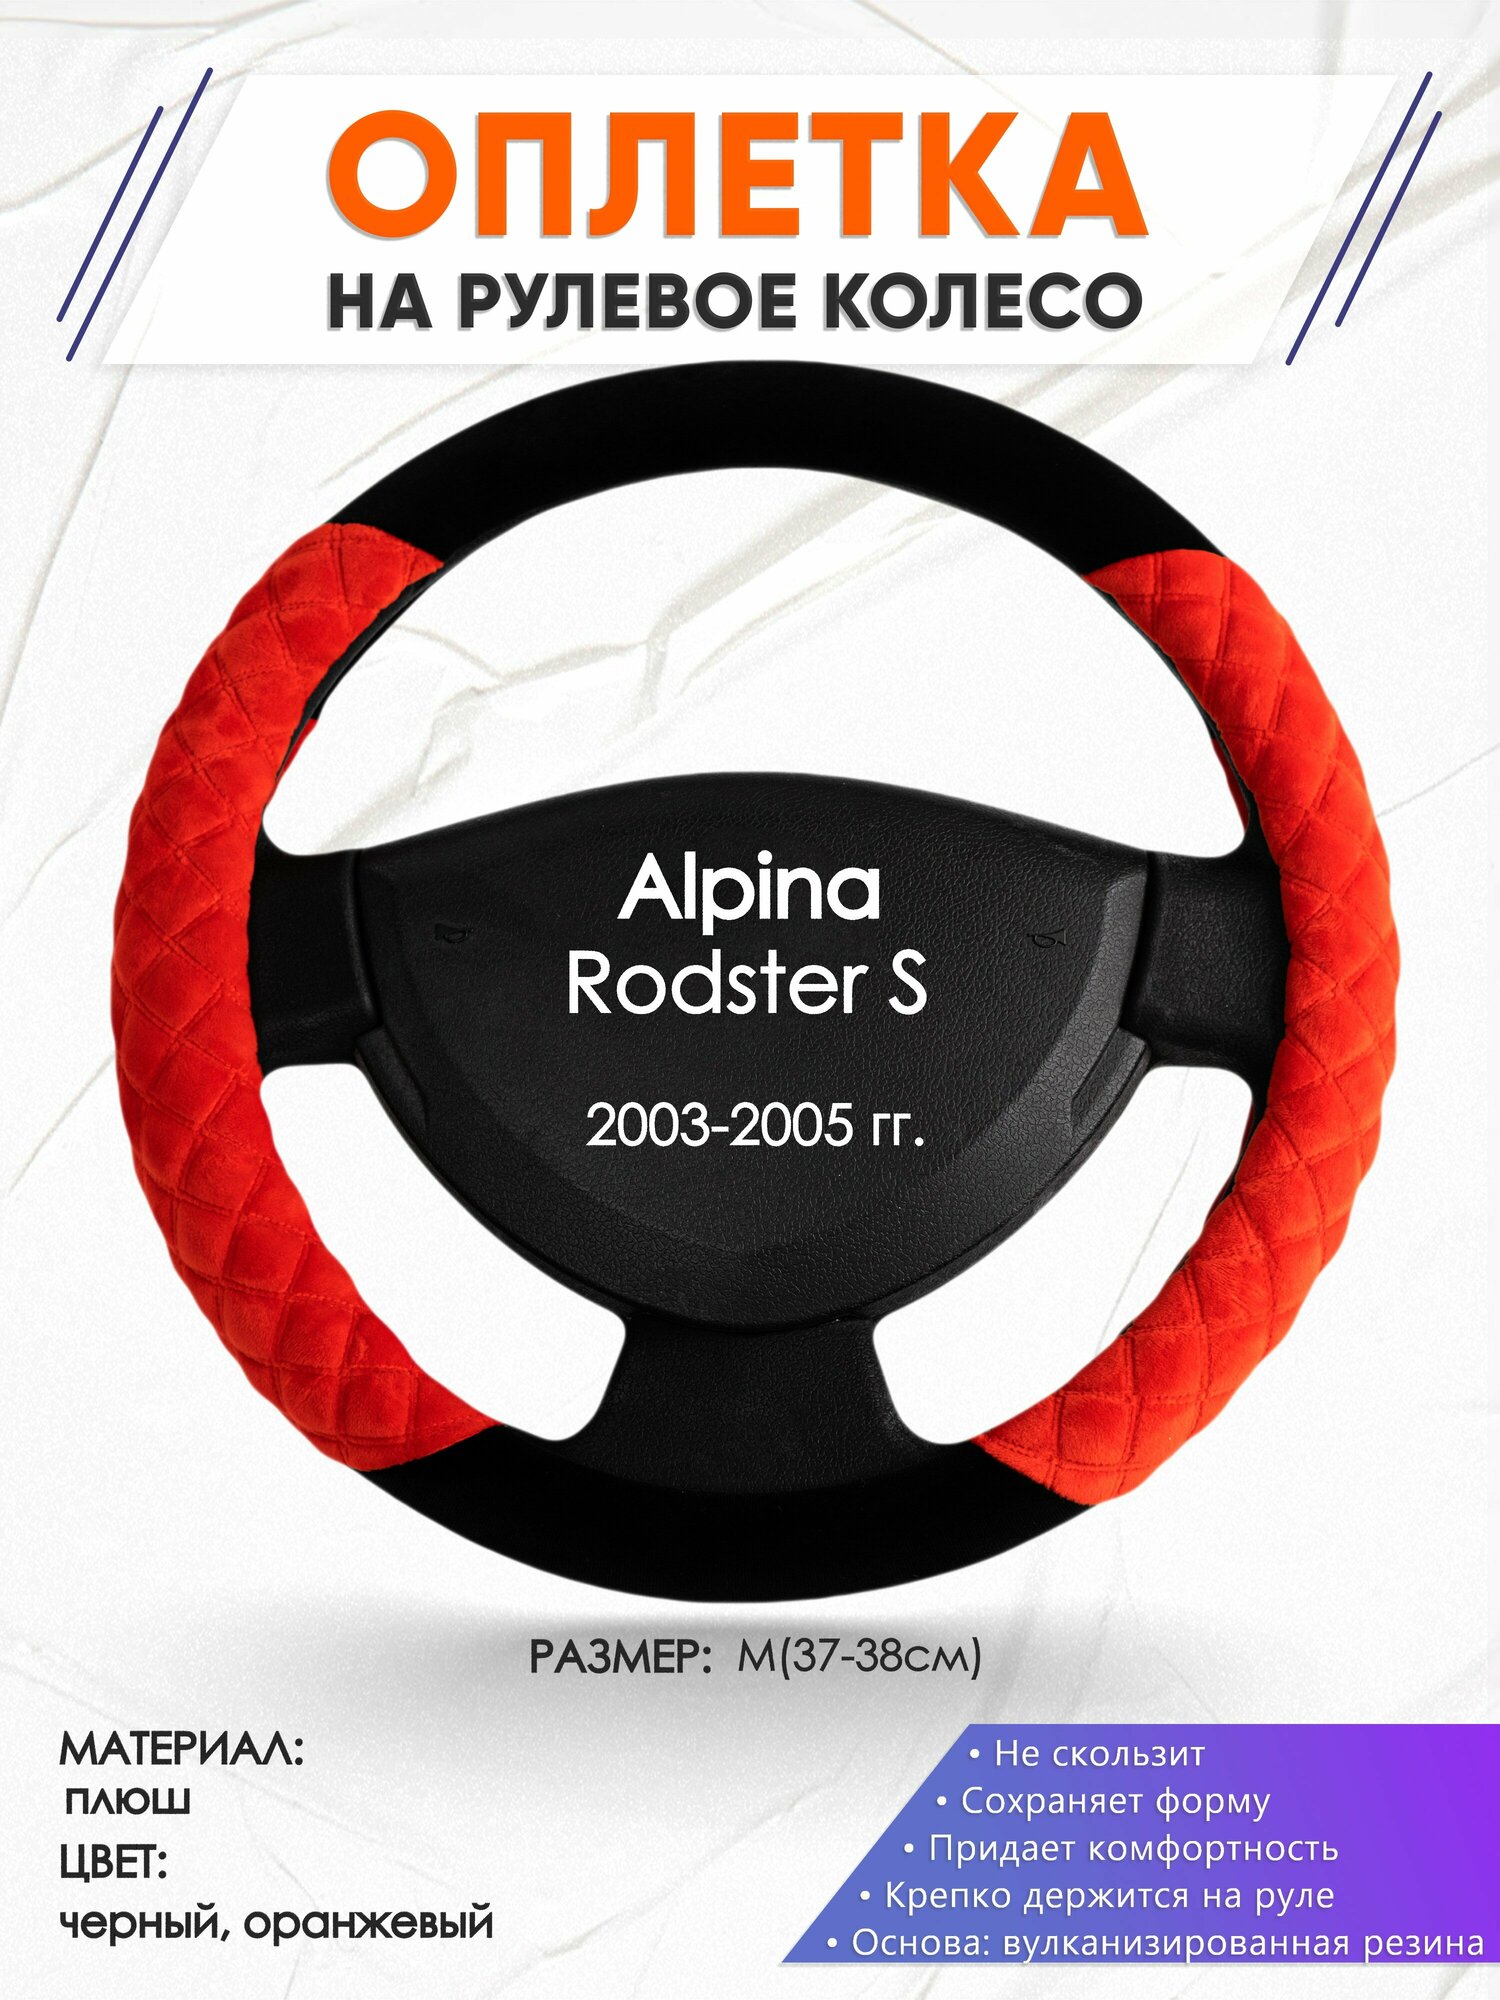 Оплетка наруль для Alpina Rodster S(Альпина Родстер) 2003-2005 годов выпуска, размер M(37-38см), Замша 37